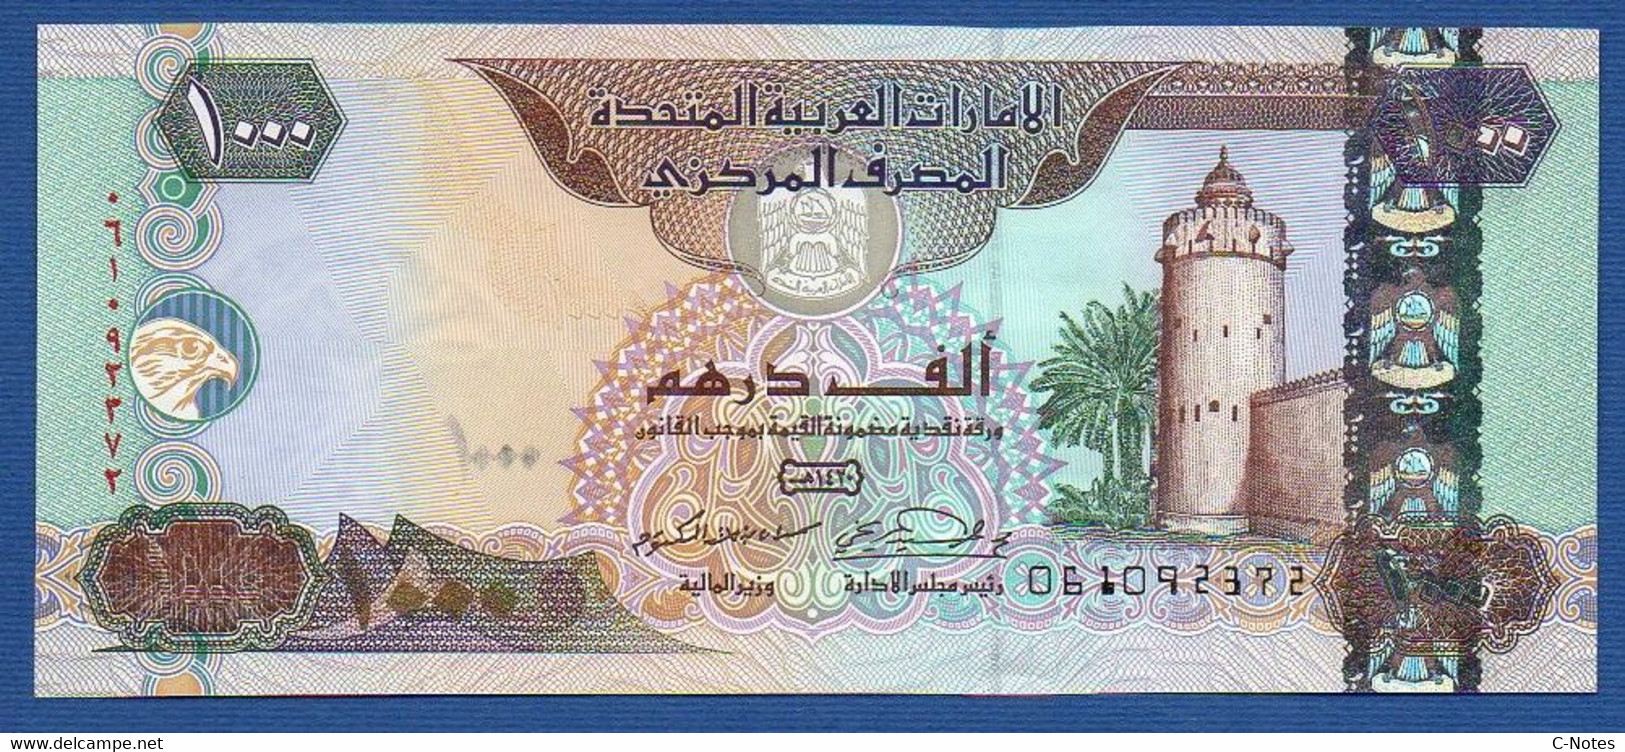 UNITED ARAB EMIRATES - P.25b – 1000 DIRHAMS 2000 UNC Serie 061092372 - Ver. Arab. Emirate